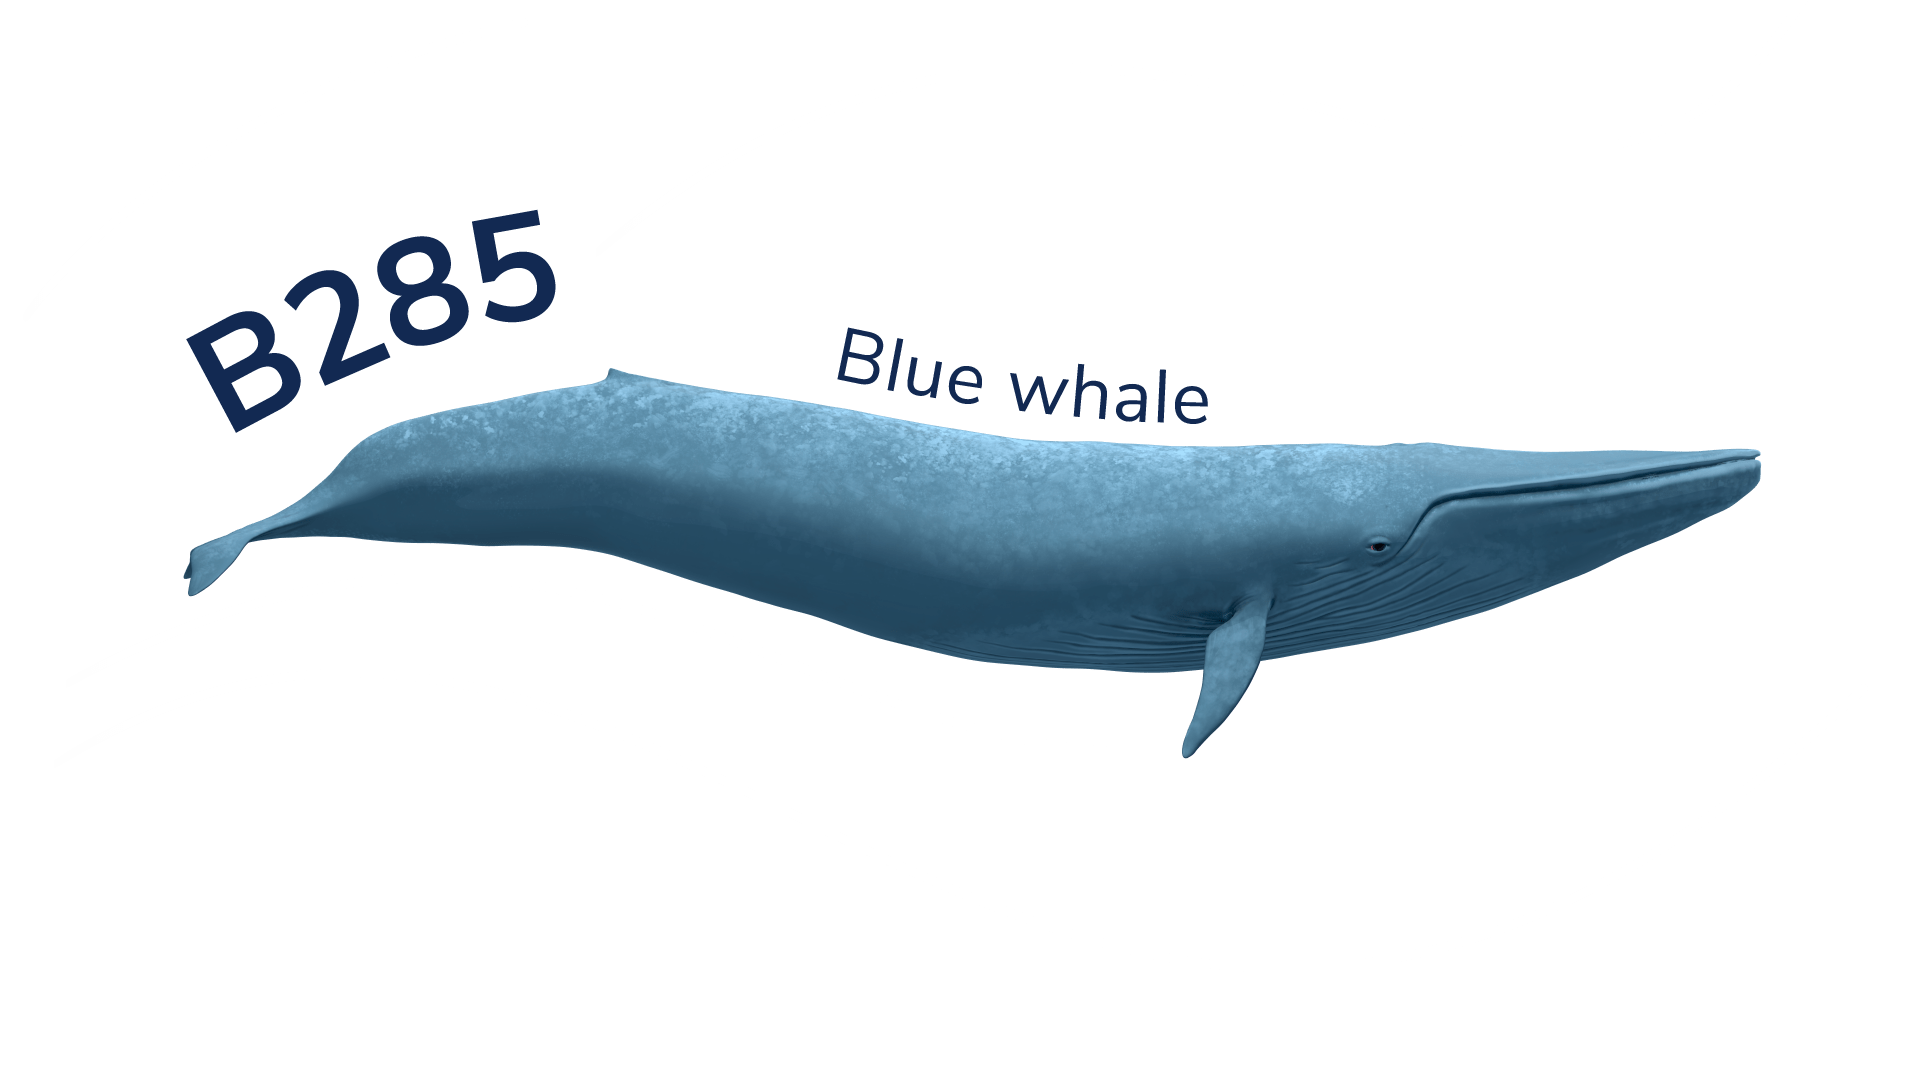 The blue whale B285